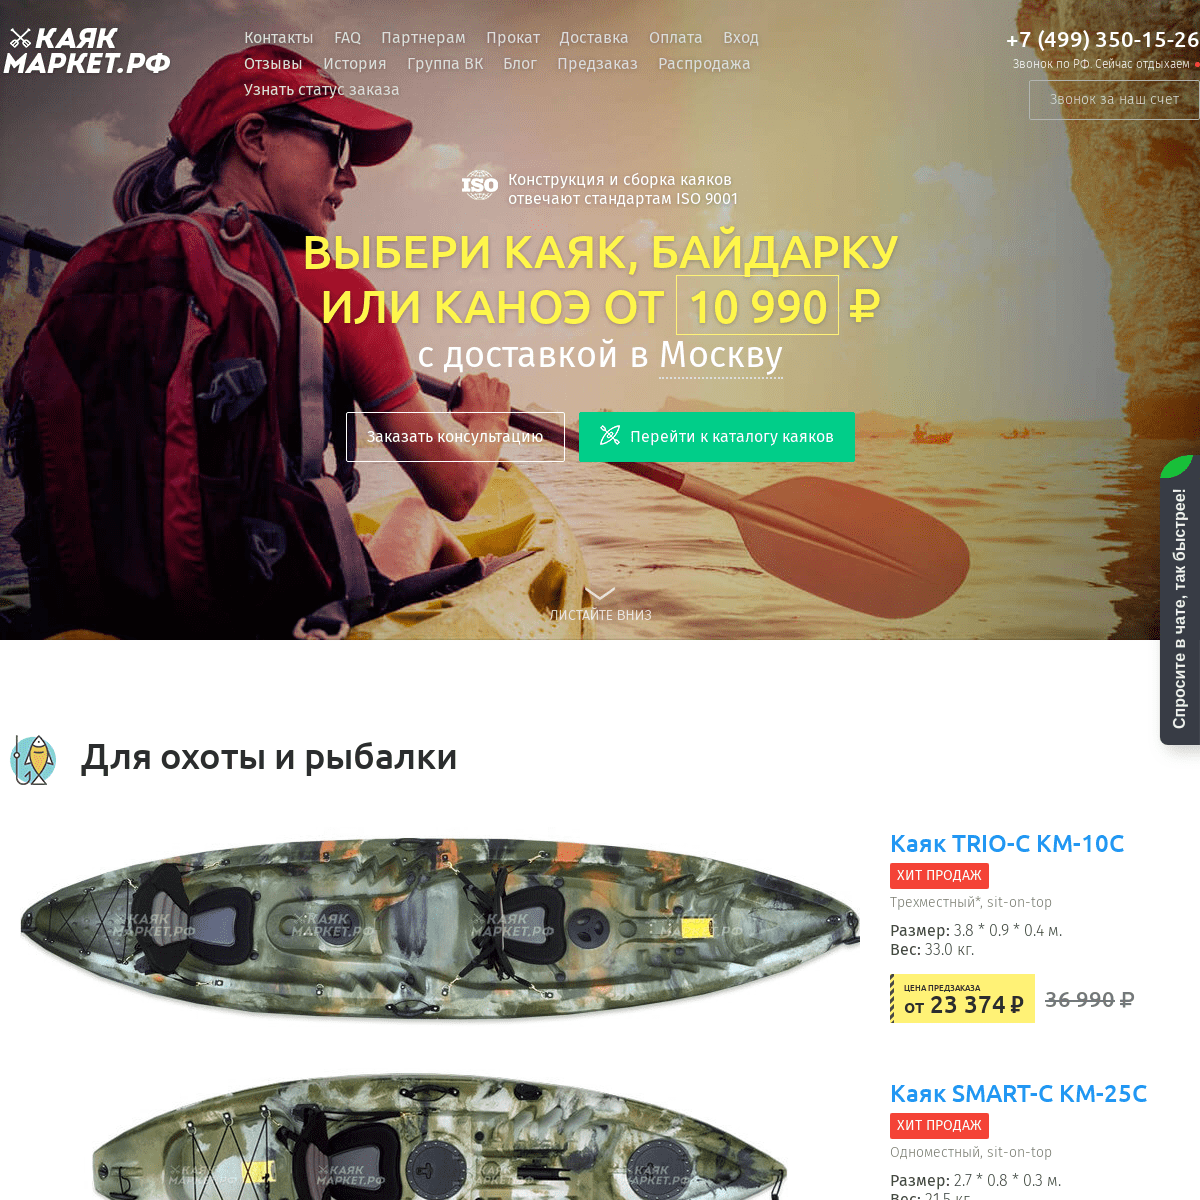 A complete backup of kayak-market.ru